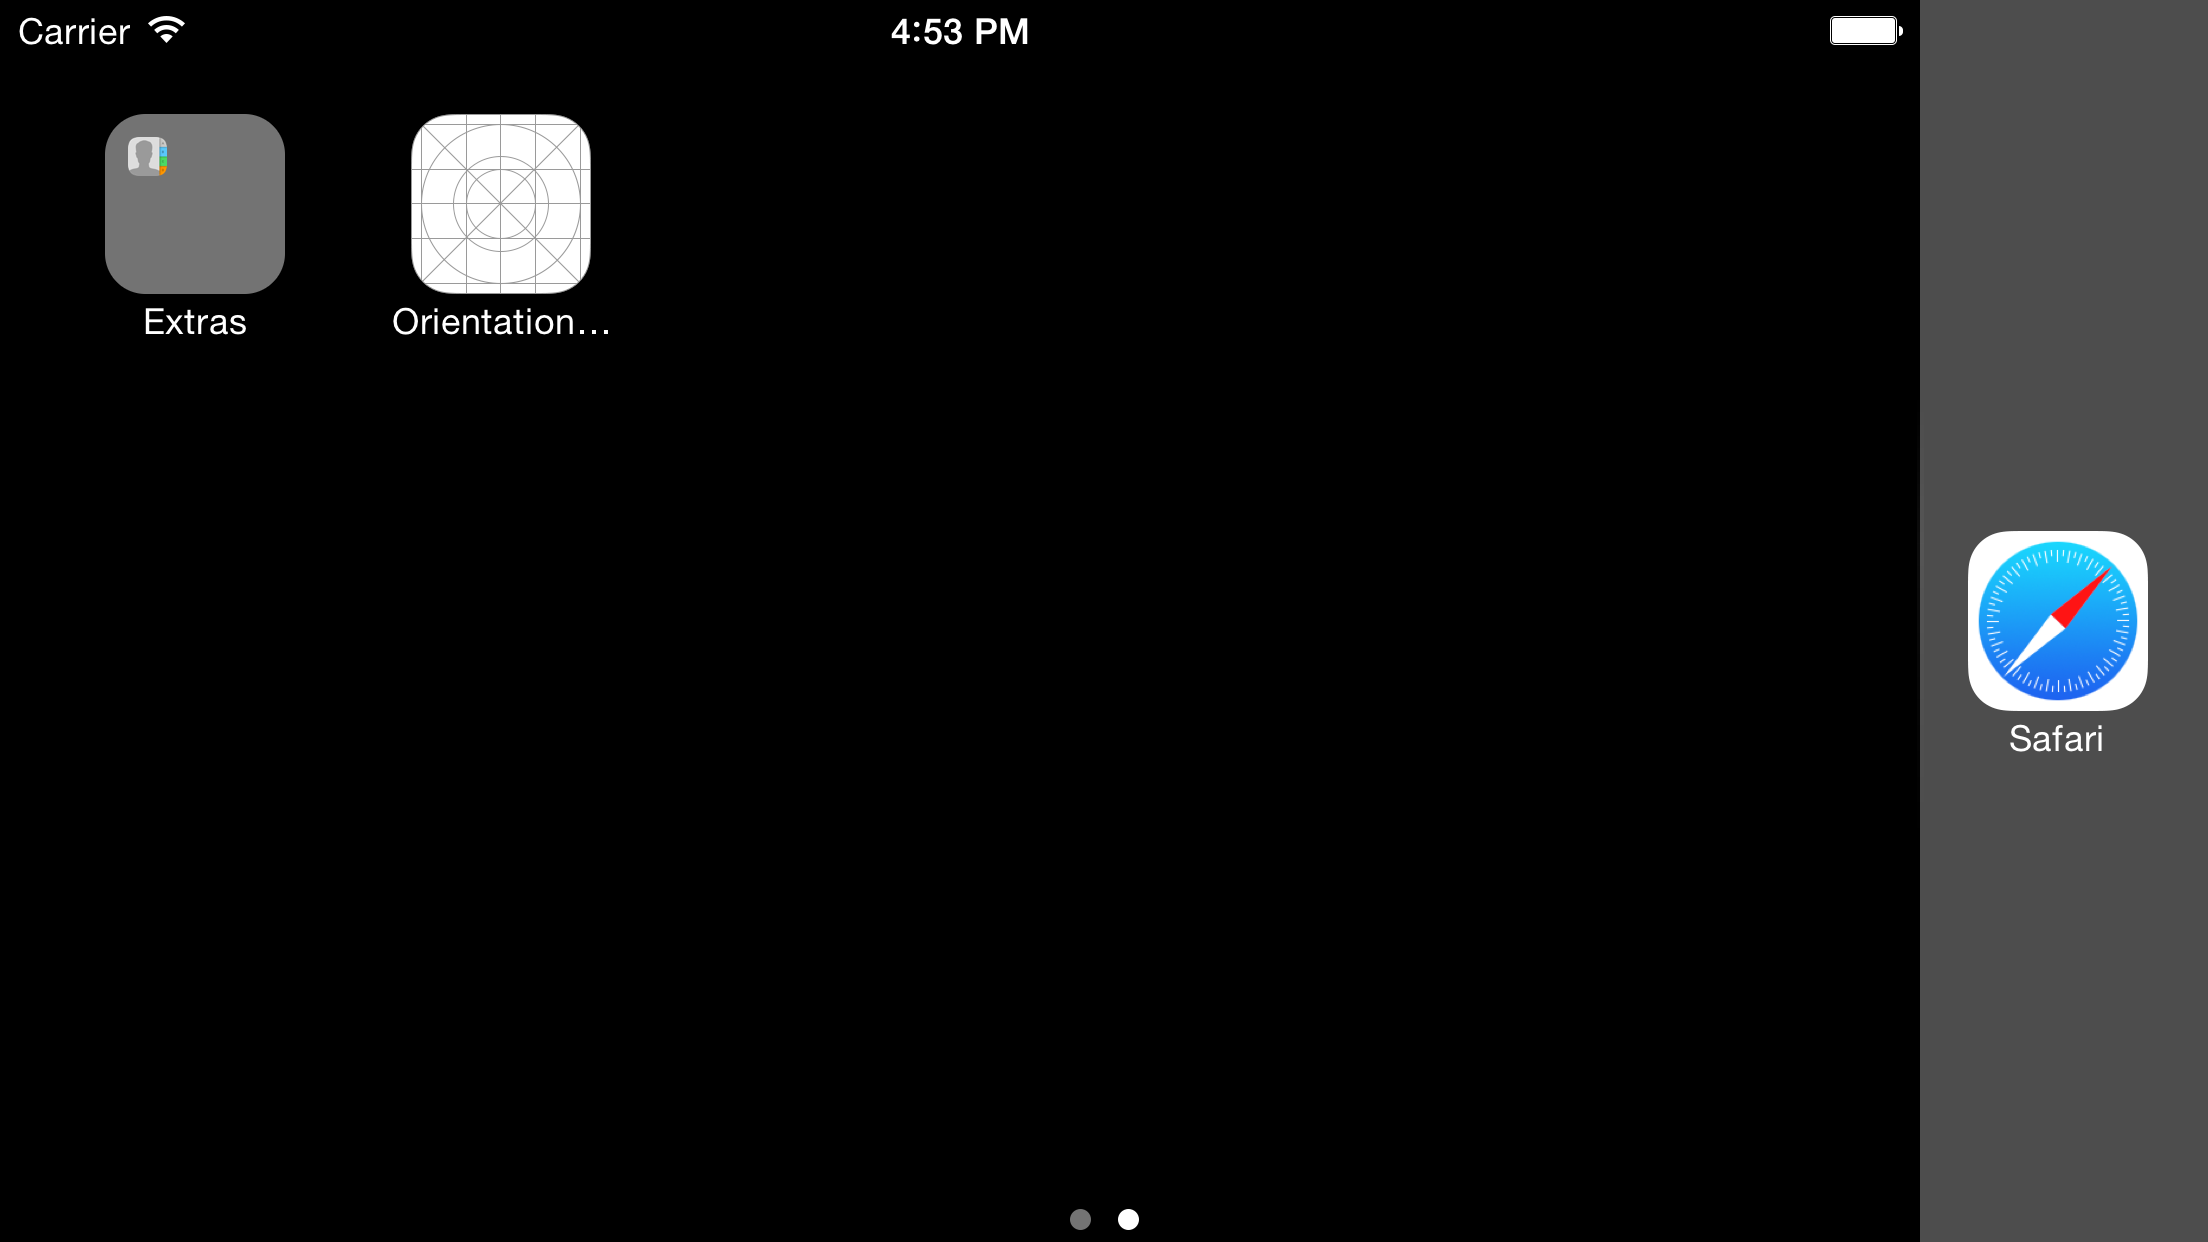 iOS Simulator Screen Shot 2014.10.07 16.53.34.png